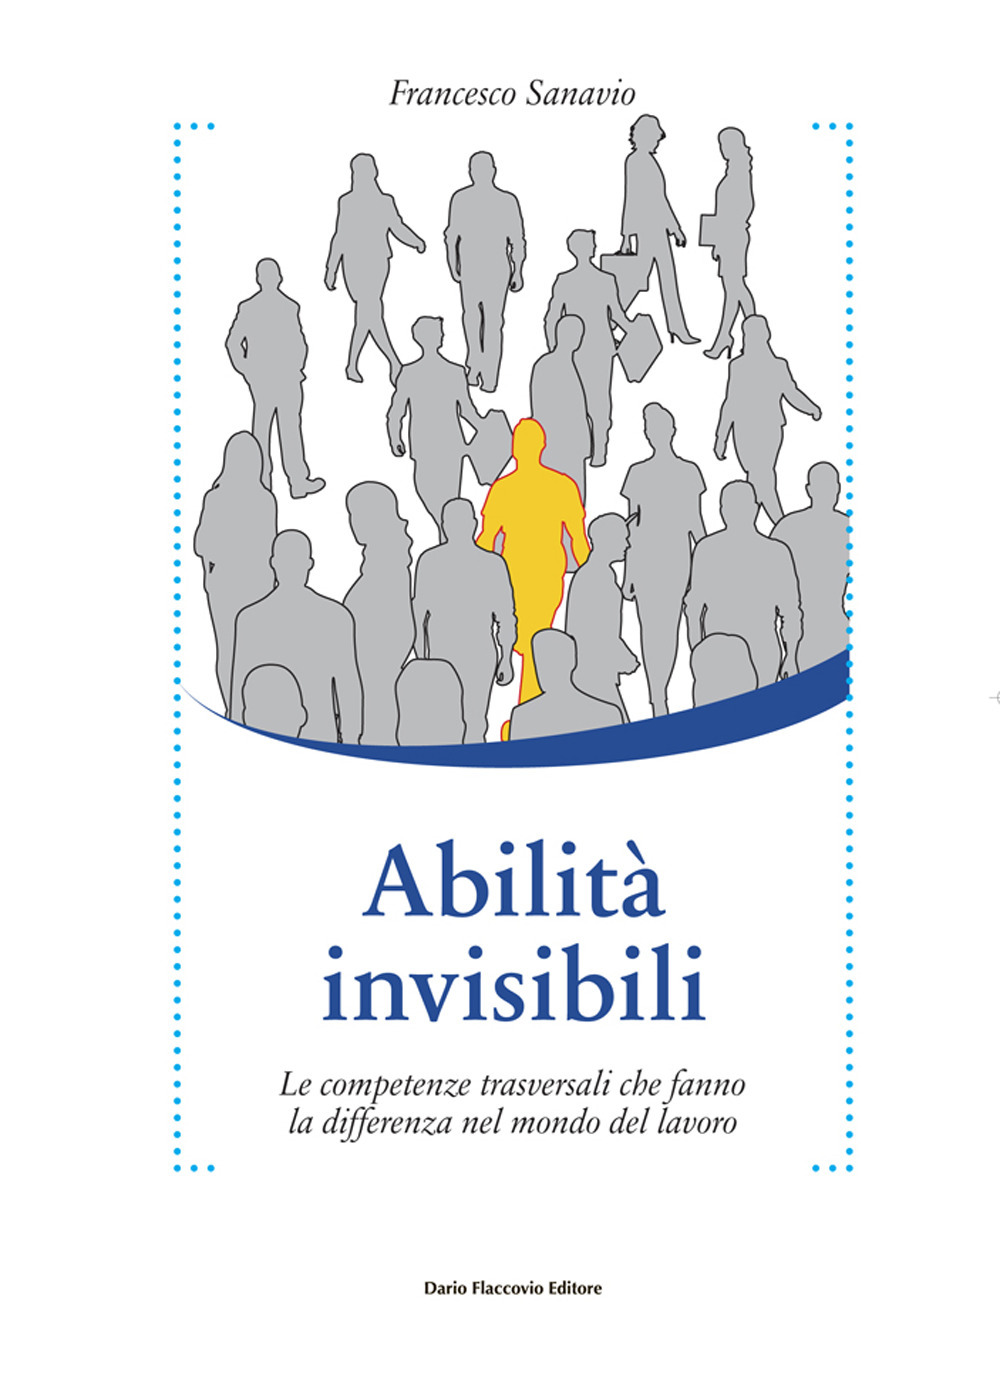 Image of Abilità invisibili. Le competenze trasversali che fanno la differenza nel mondo del lavoro